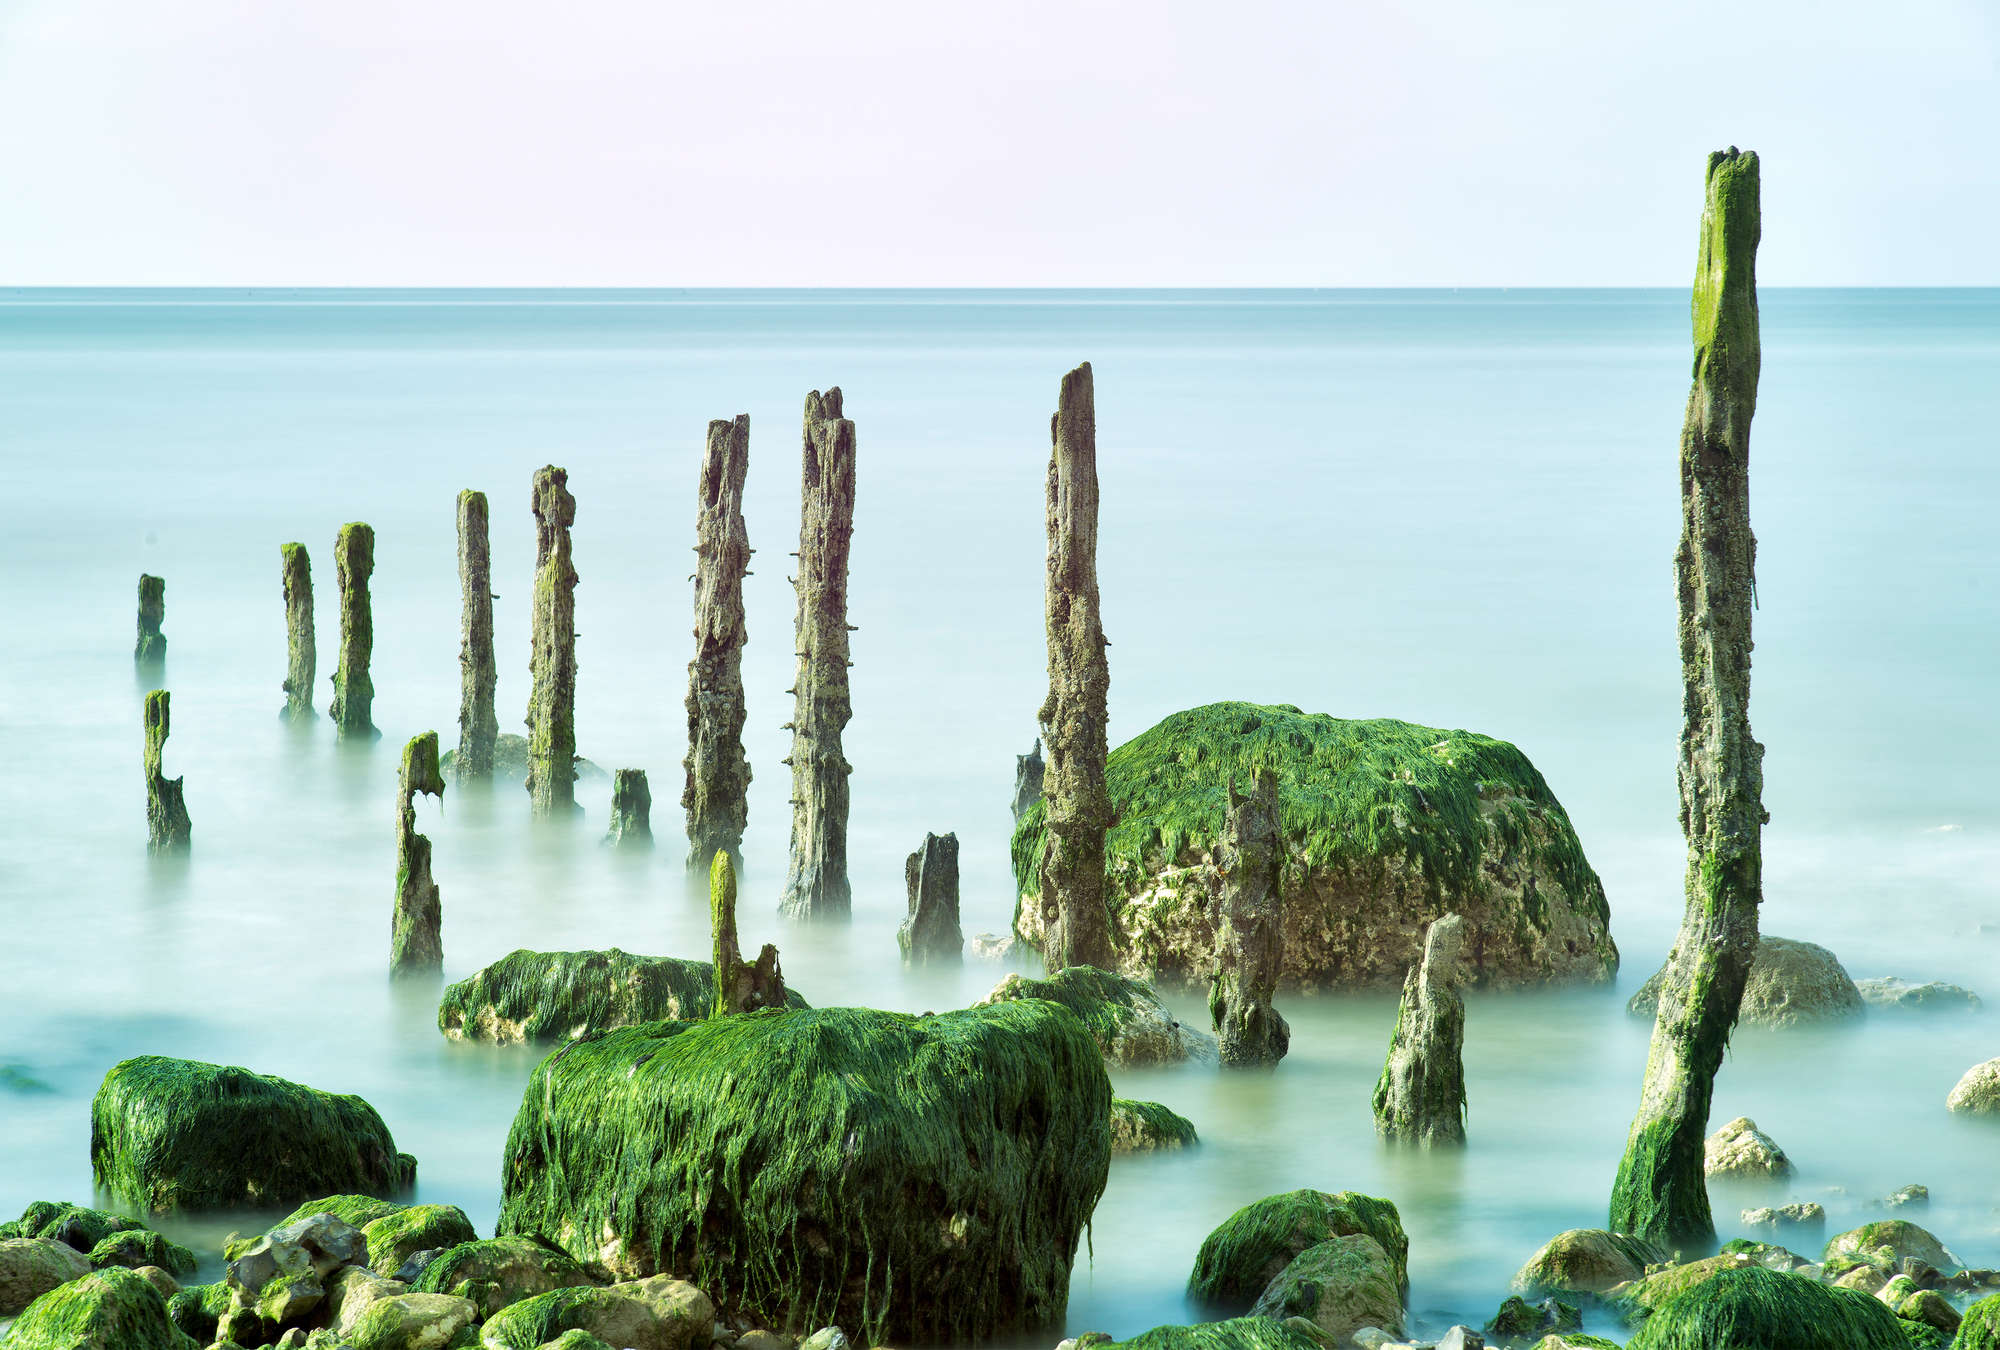             Fotomurali marino frangiflutti roccia verde e mare calmo
        